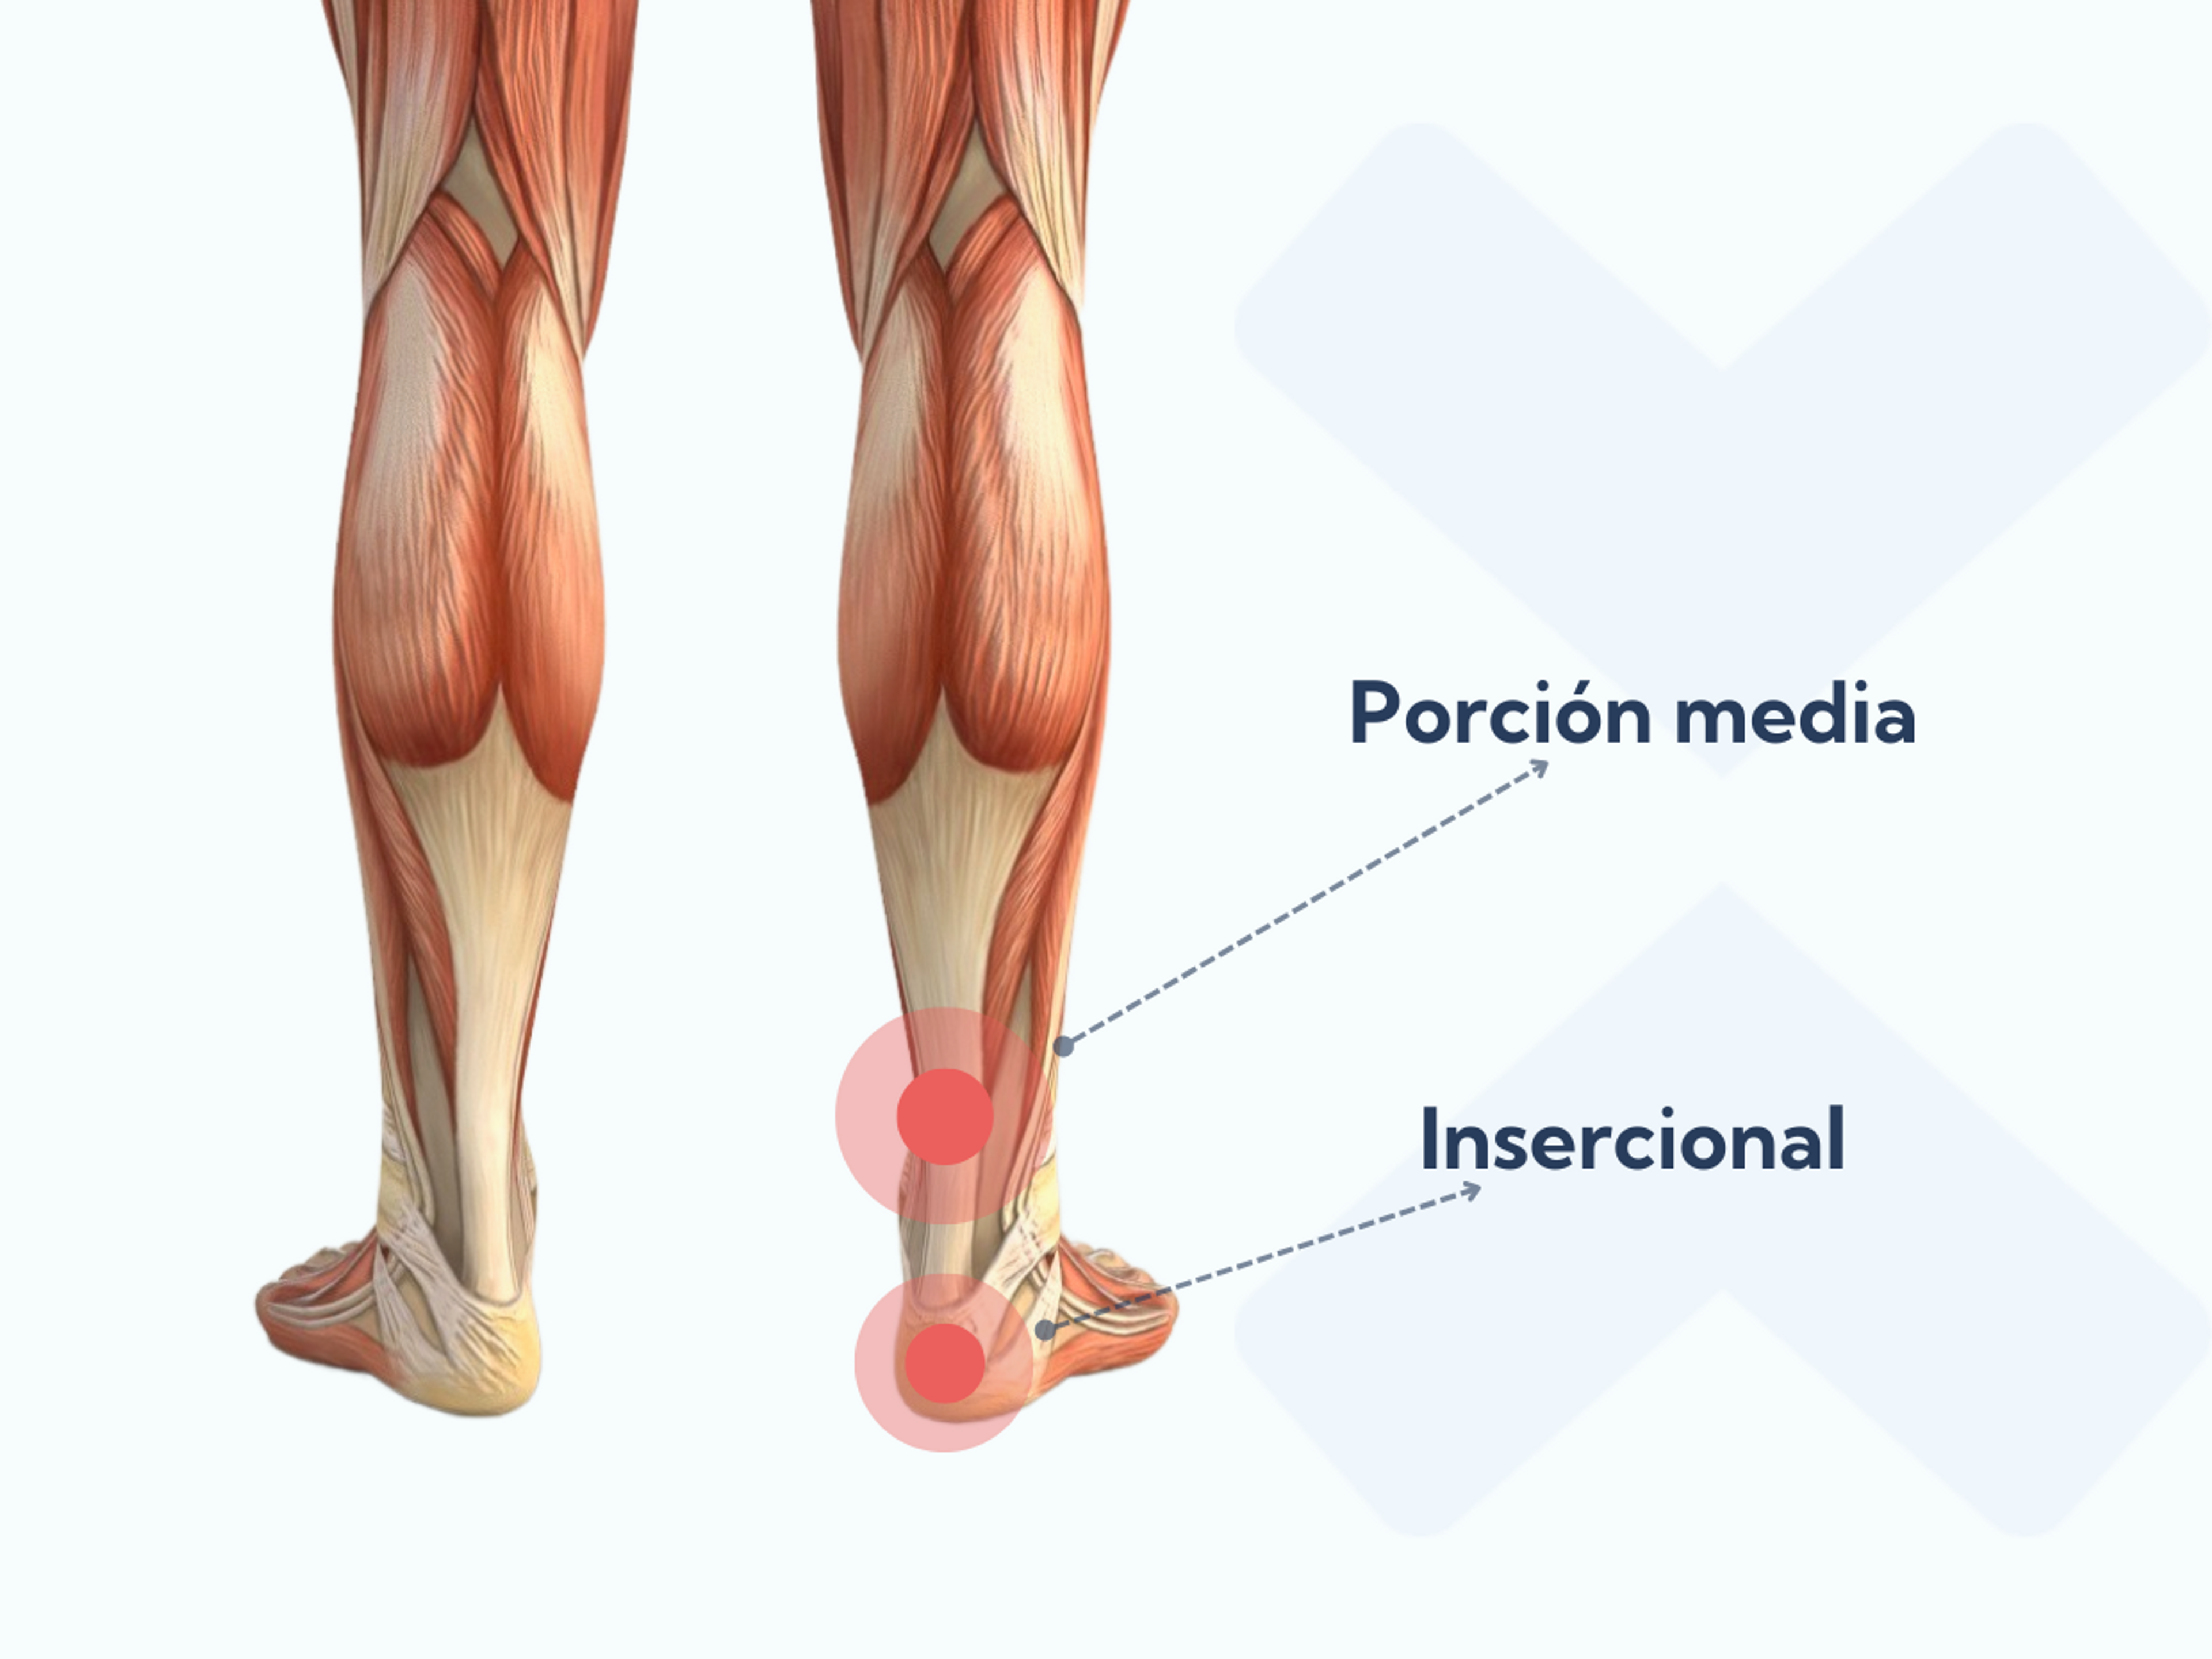 La tendinopatía de la porción media del tendón de Aquiles se desarrolla aproximadamente 5 centímetros por encima del hueso del talón, mientras que la tendinopatía insercional de Aquiles surge en el punto donde el tendón se une al hueso del talón.